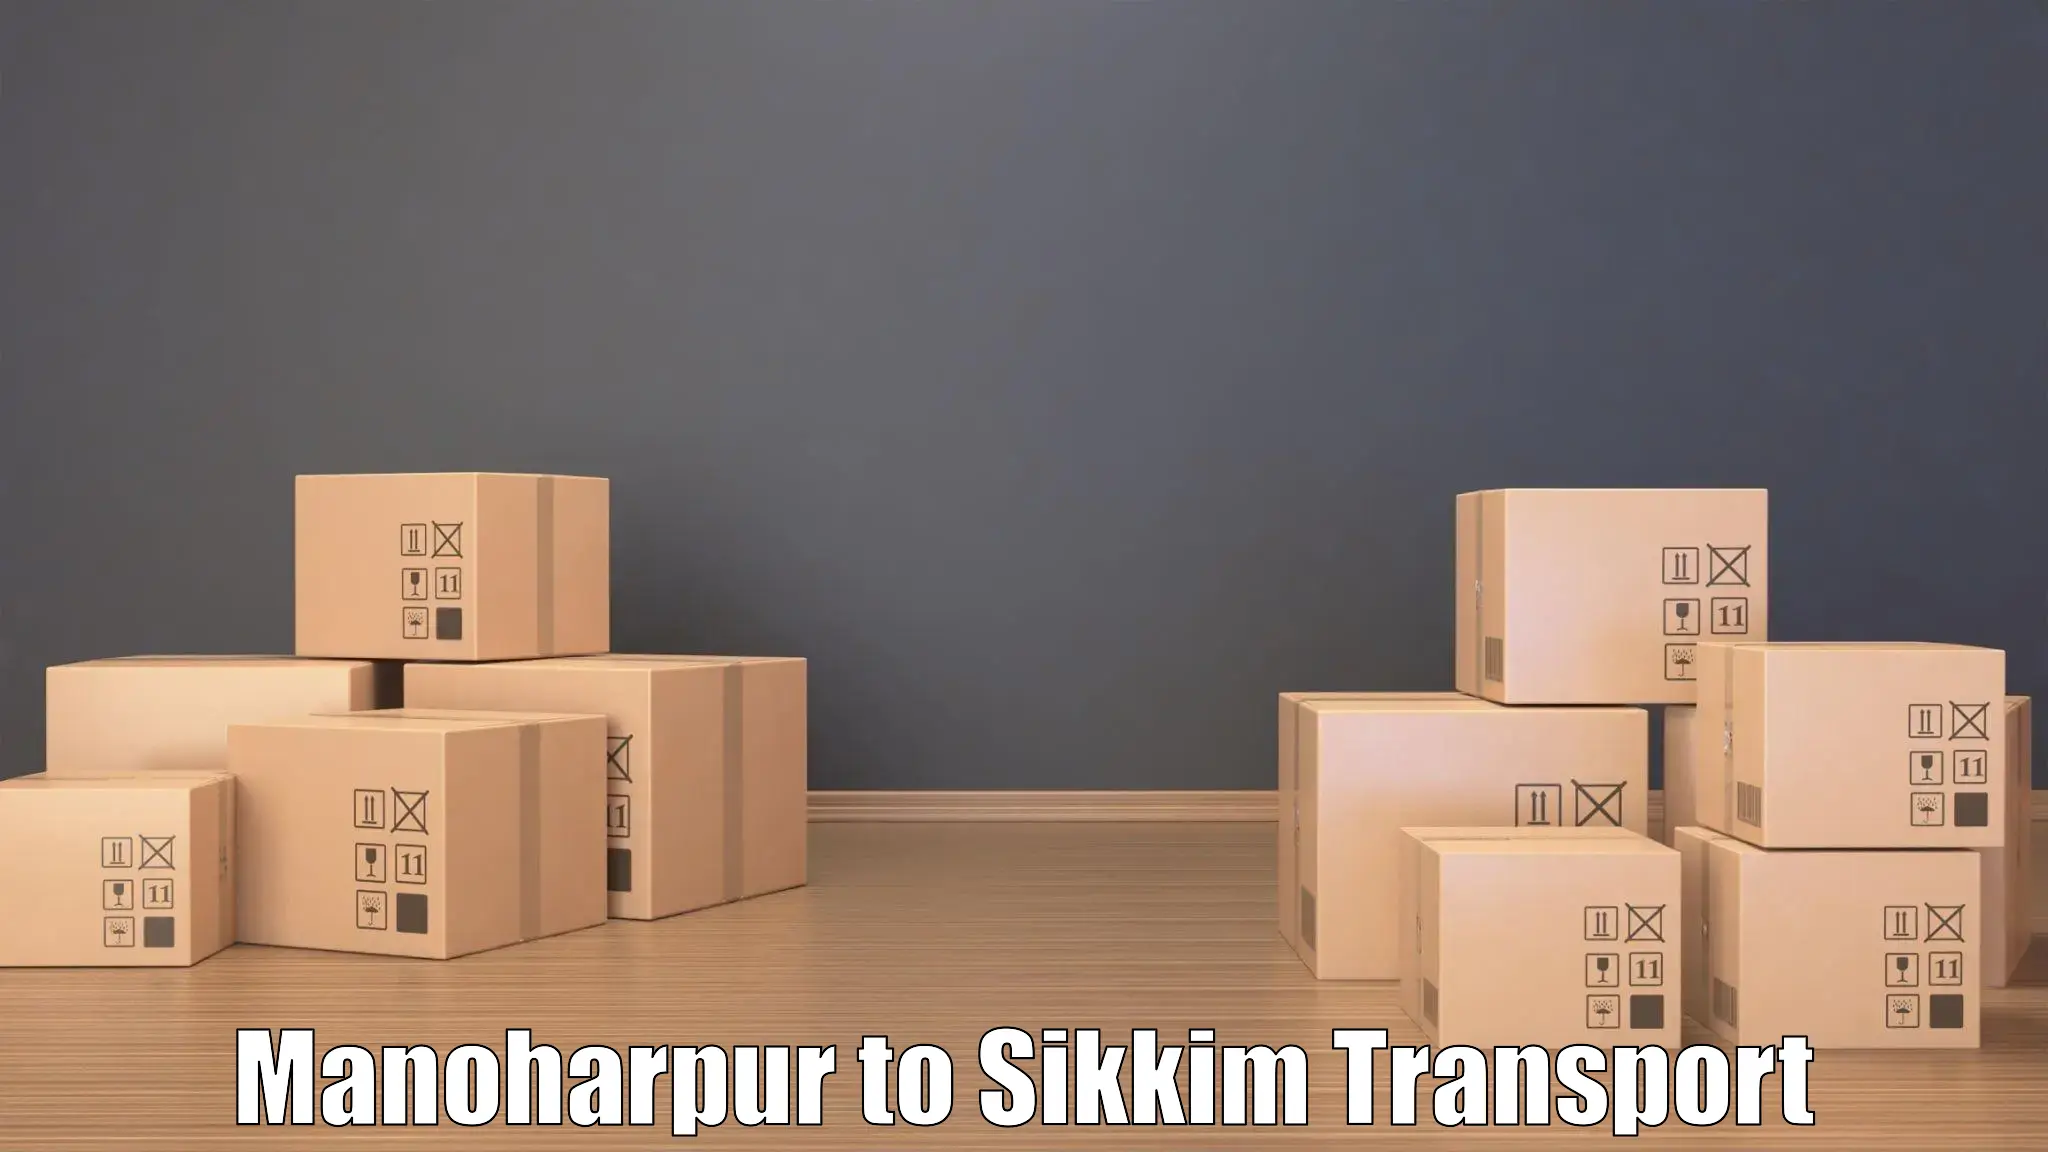 Nearest transport service Manoharpur to North Sikkim